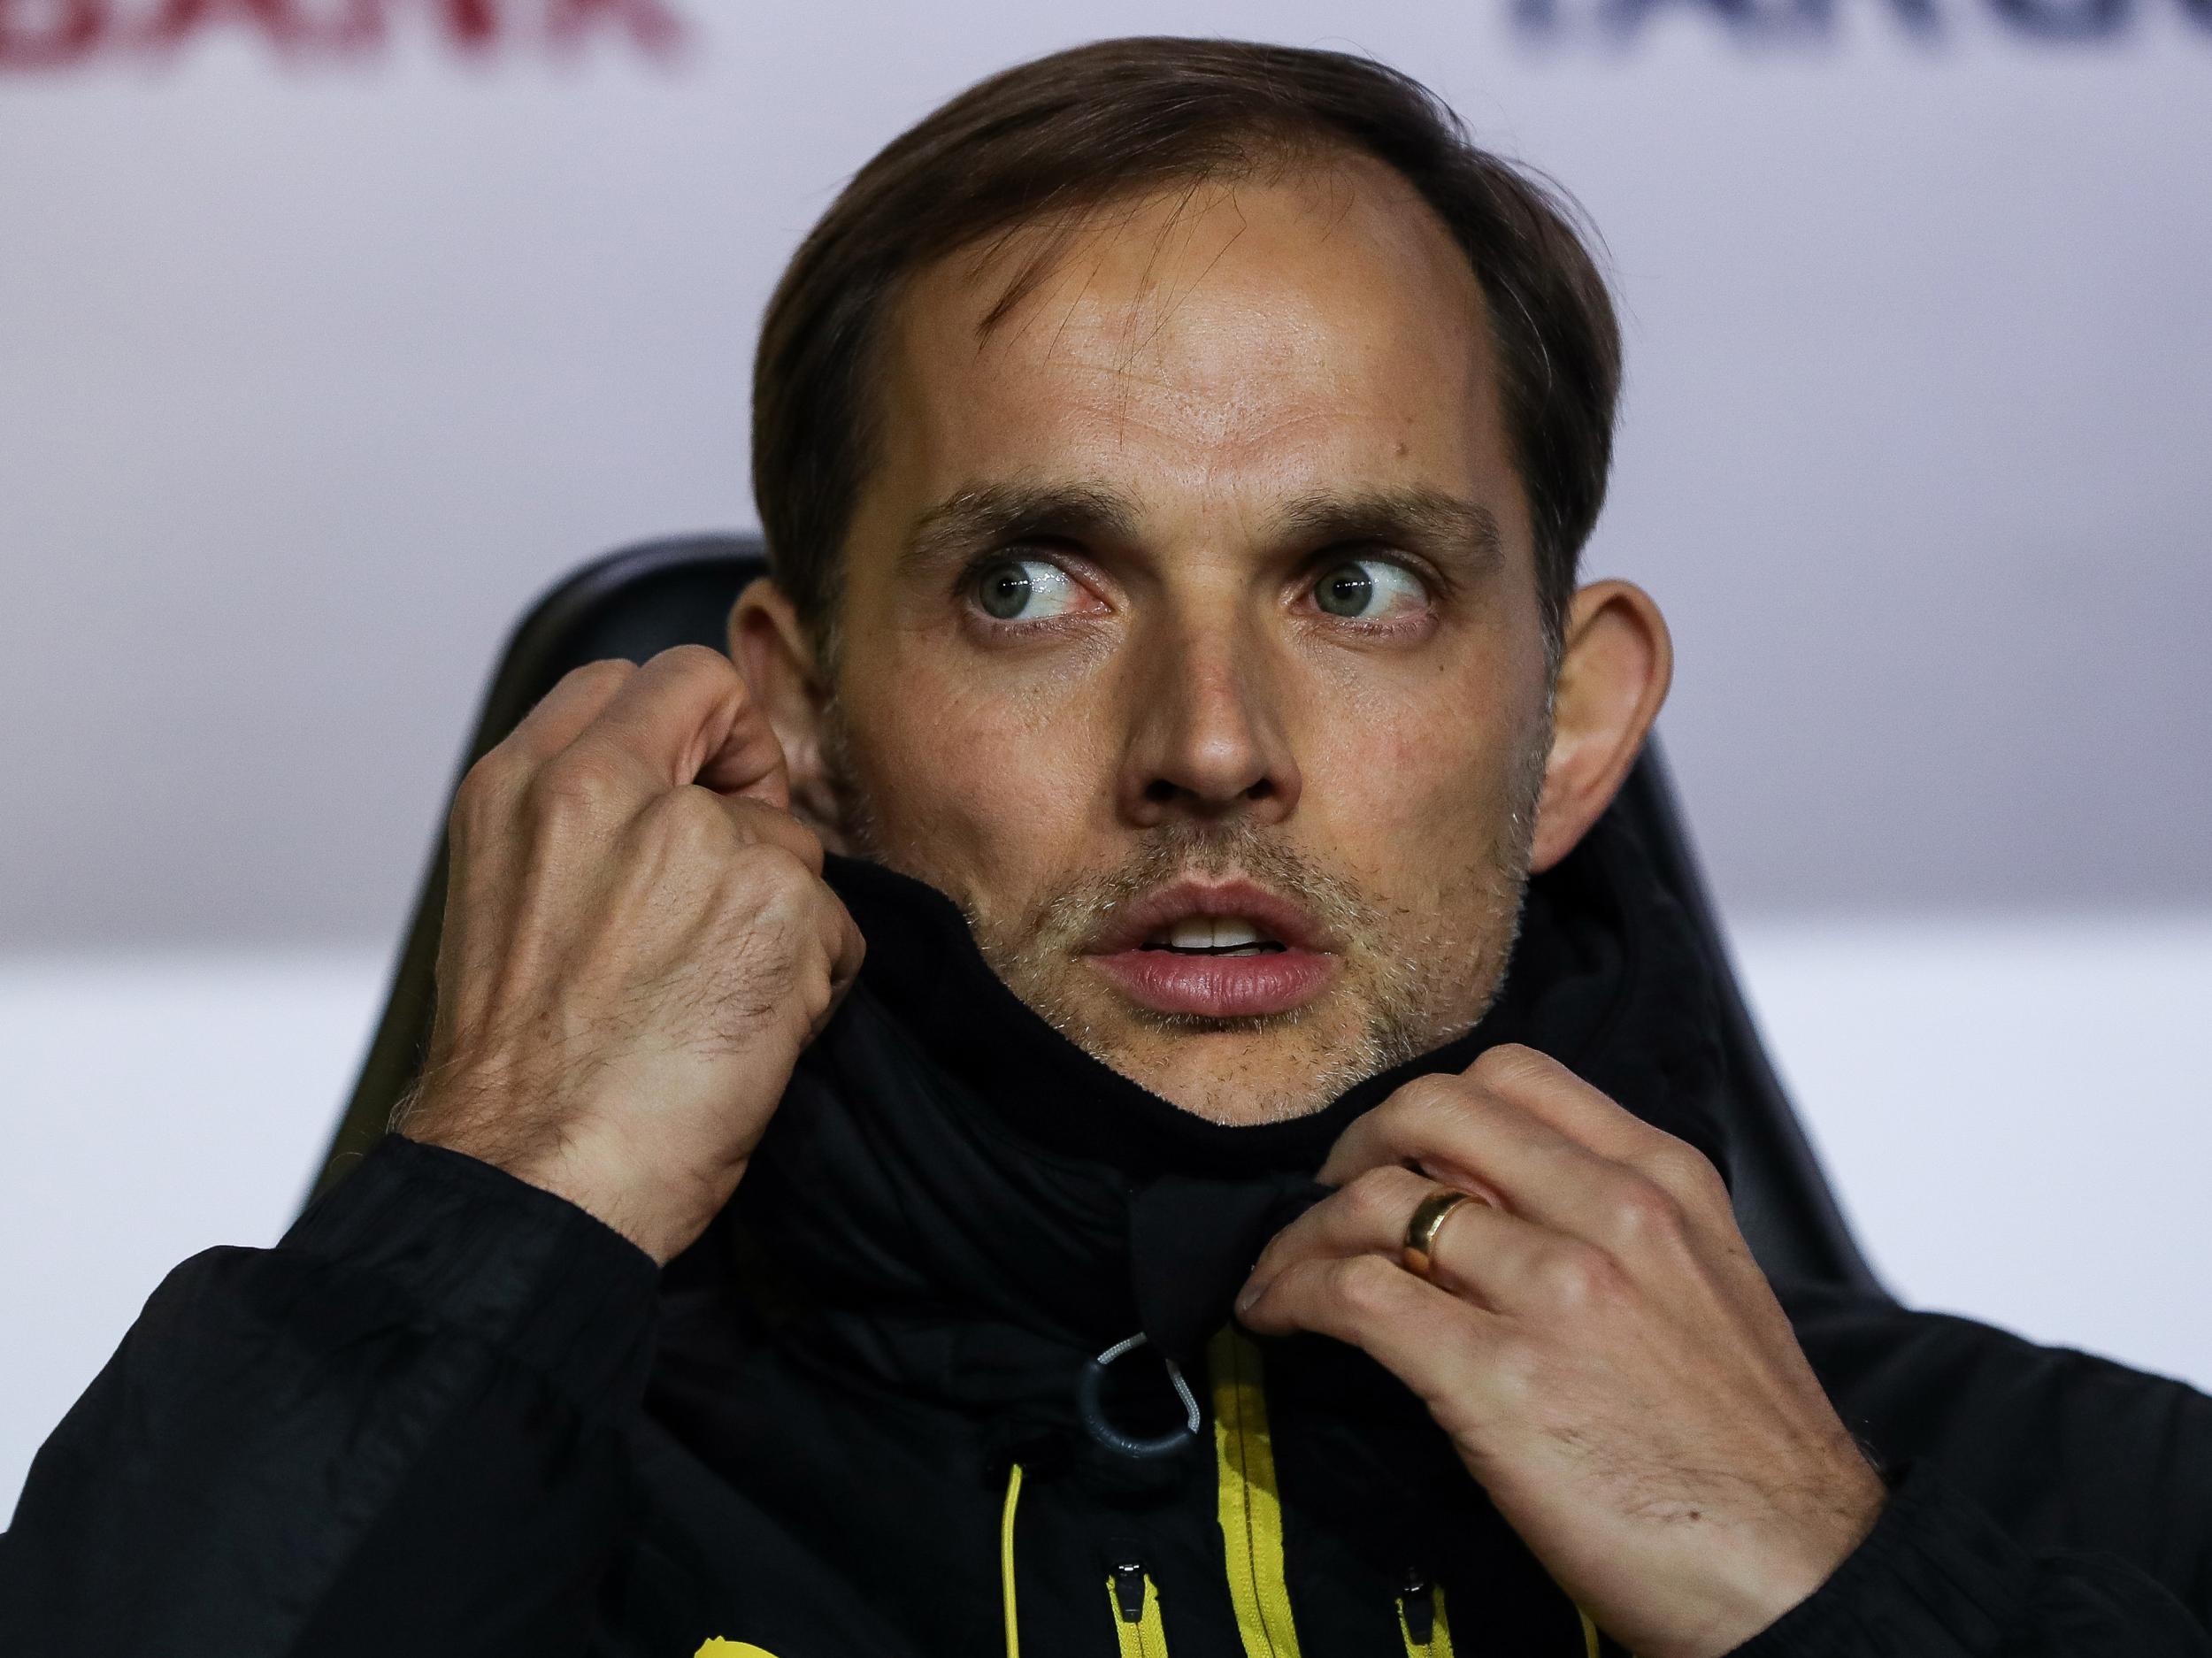 Tuchel has impressed since replacing Jurgen Klopp at Dortmund